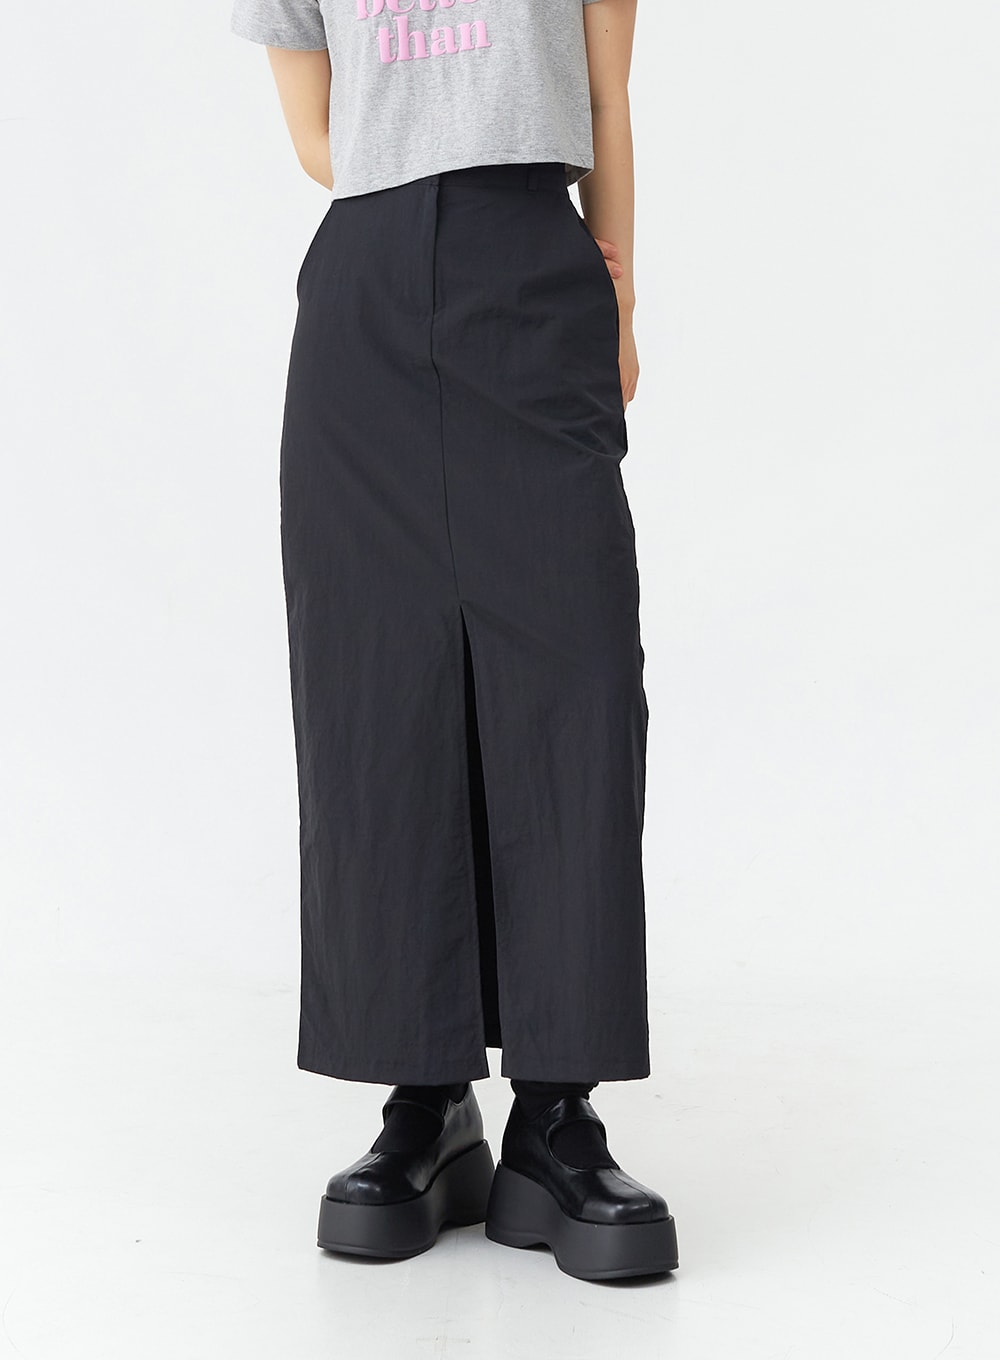 Nylon Slit Maxi Skirt OG03 - Lewkin